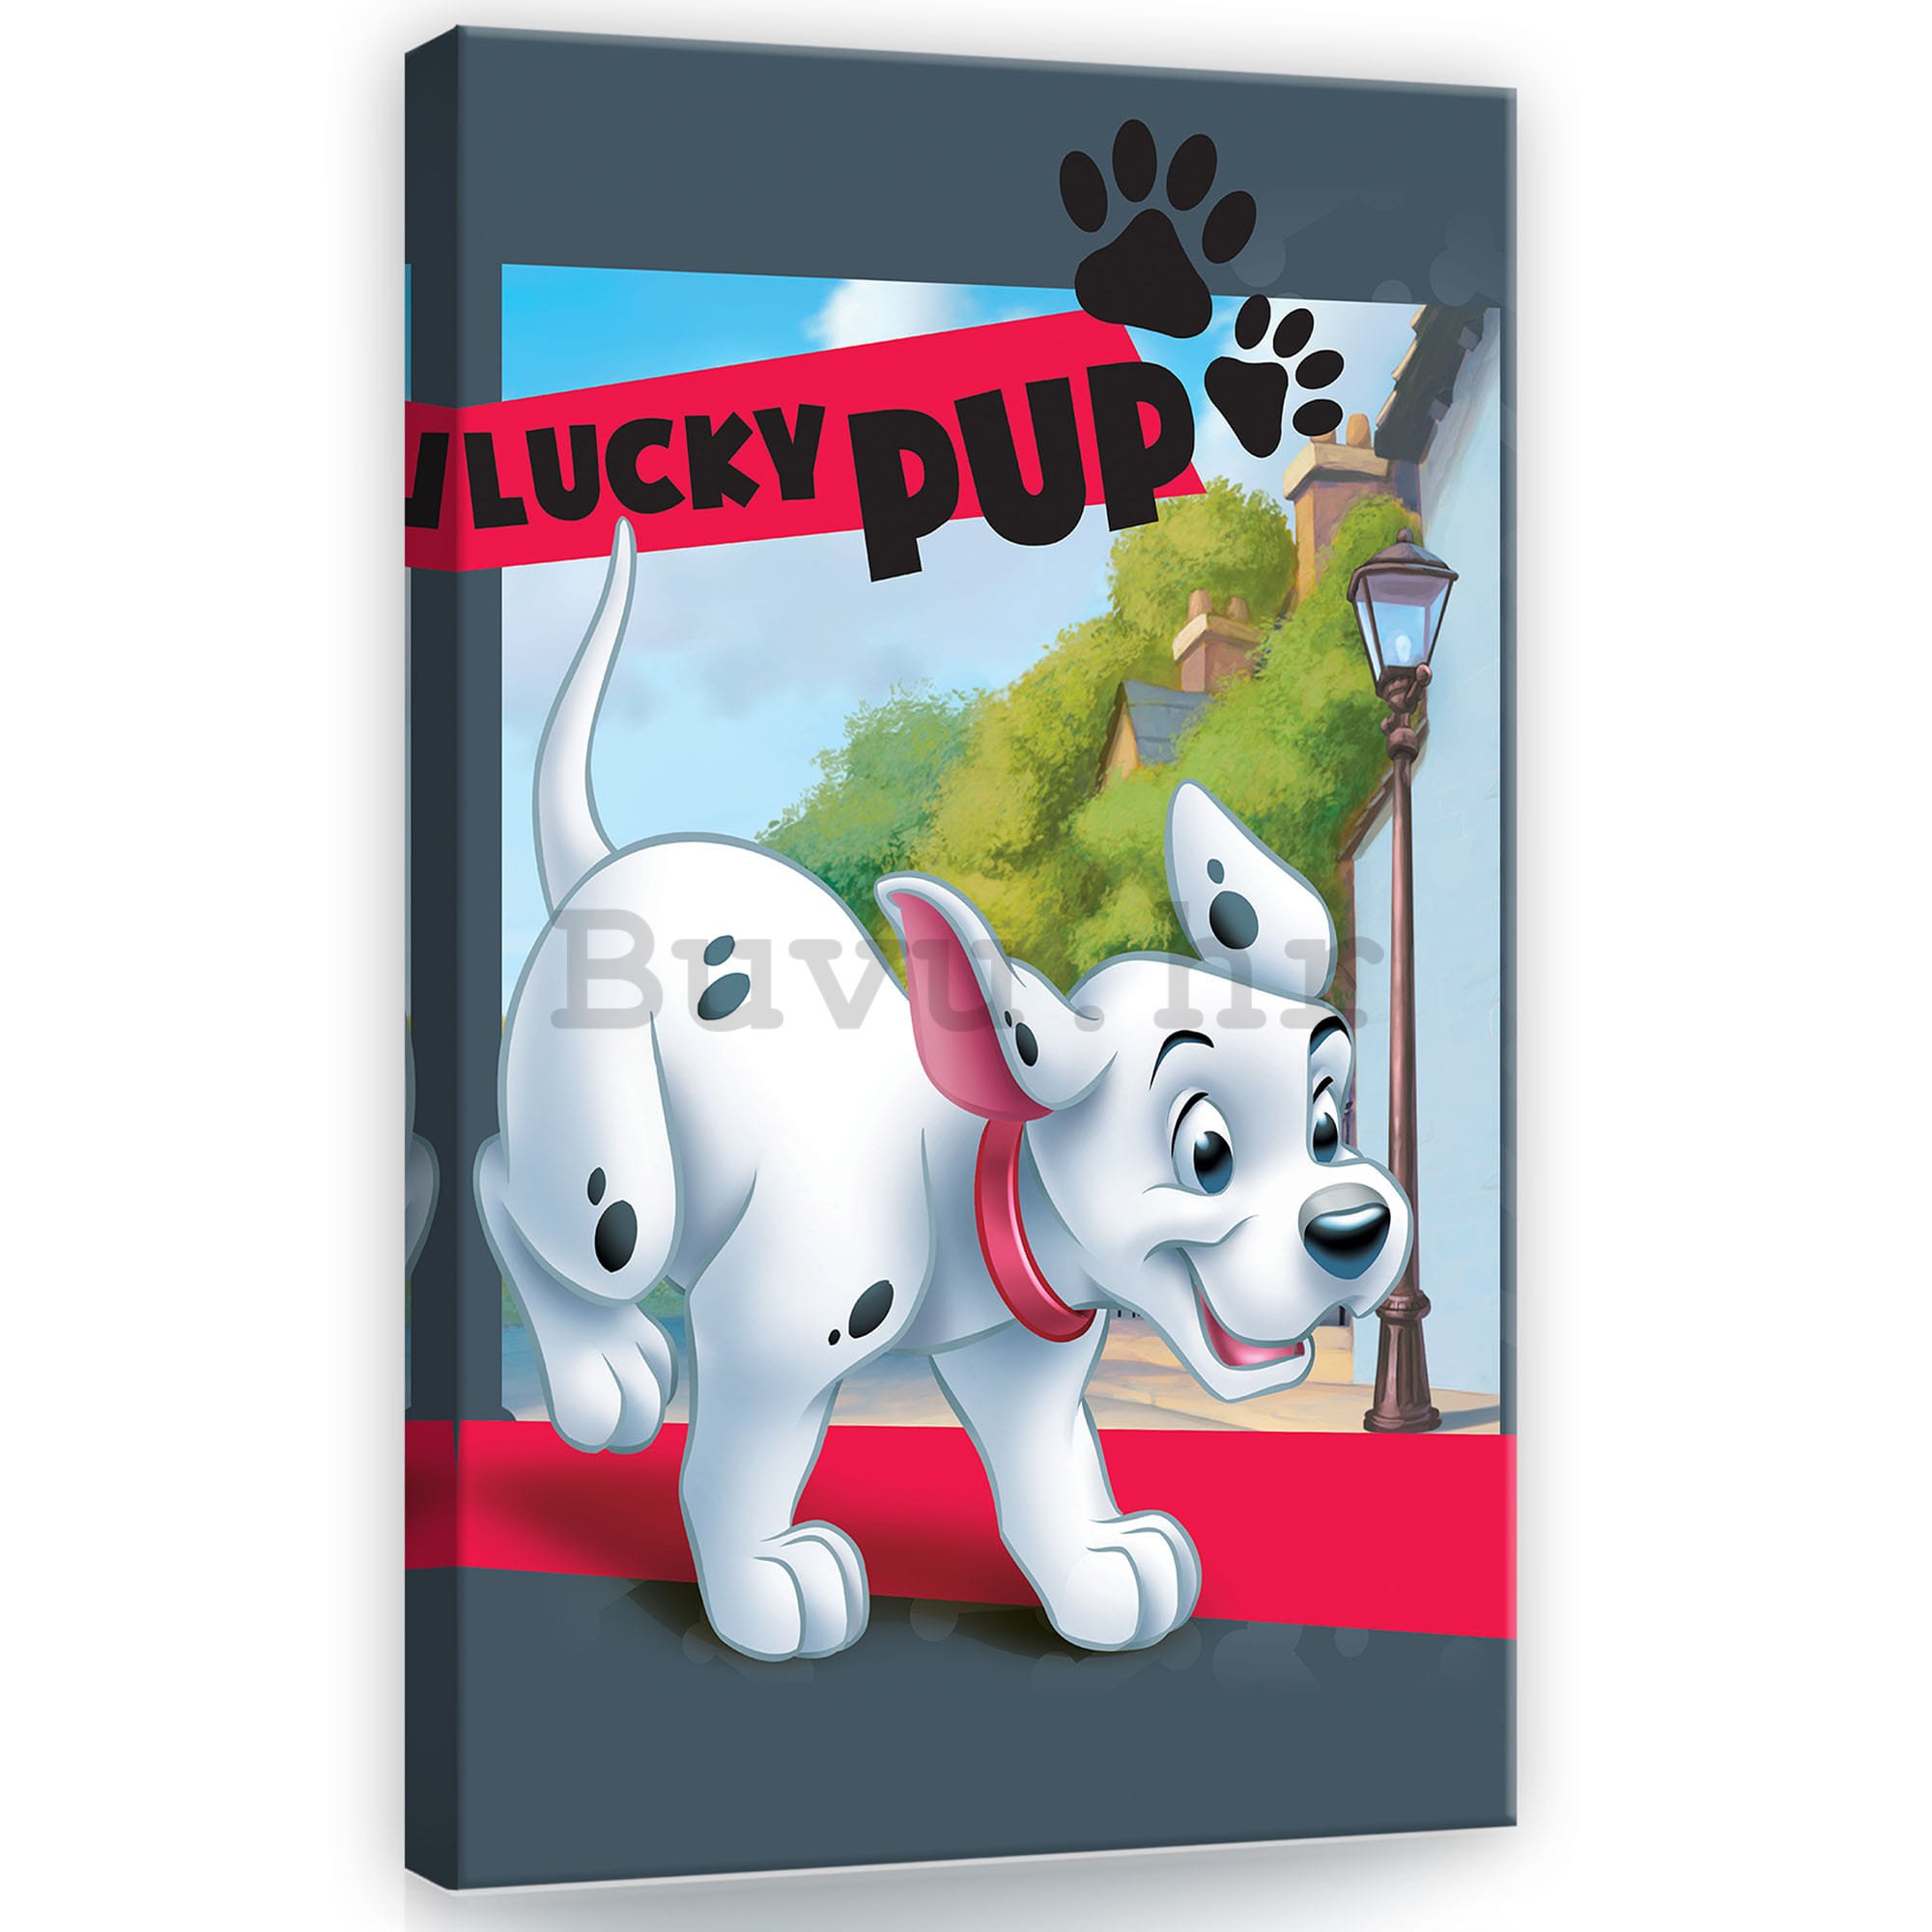 Slika na platnu: 101 dalmatinac (Lucky Pup) - 40x60 cm